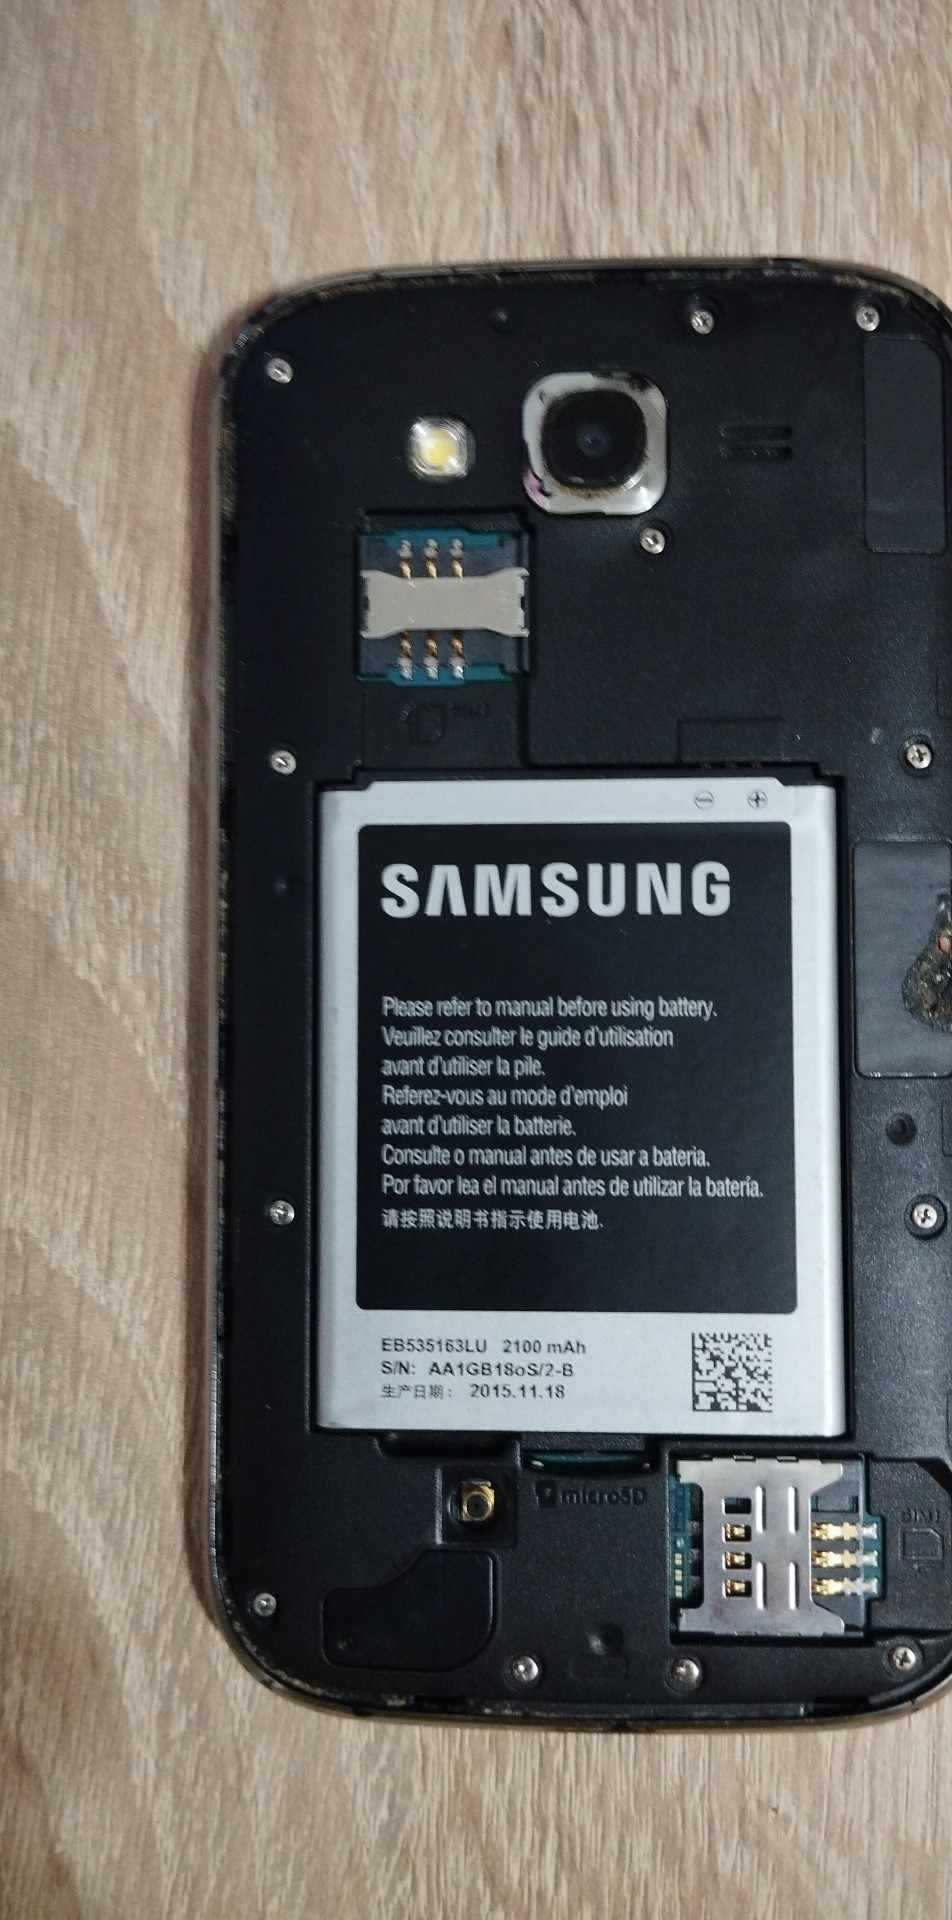 Vând Samsung Galaxy Dual SIM